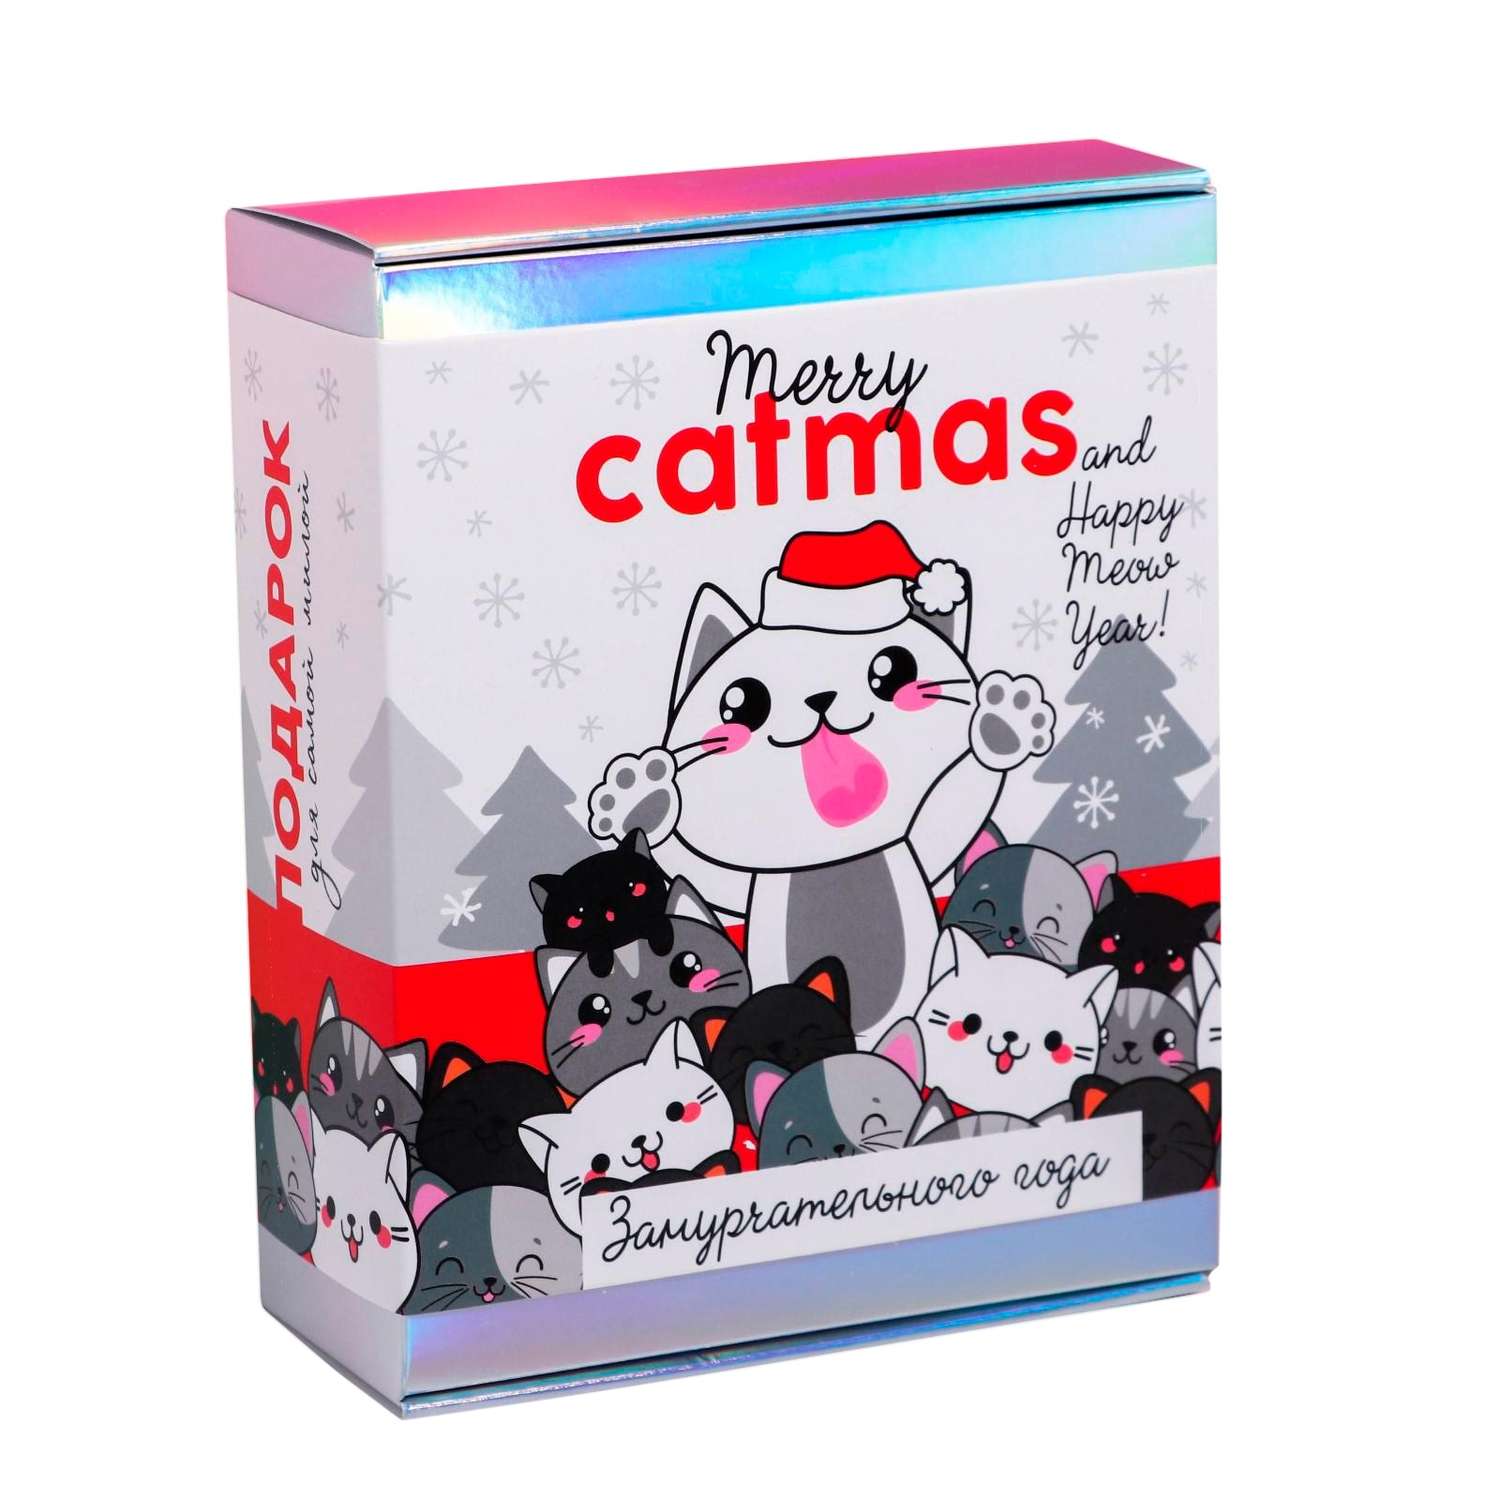 Подарочный набор Art BEAUTY «Merry catmas» с аксессуарами для волос - фото 1